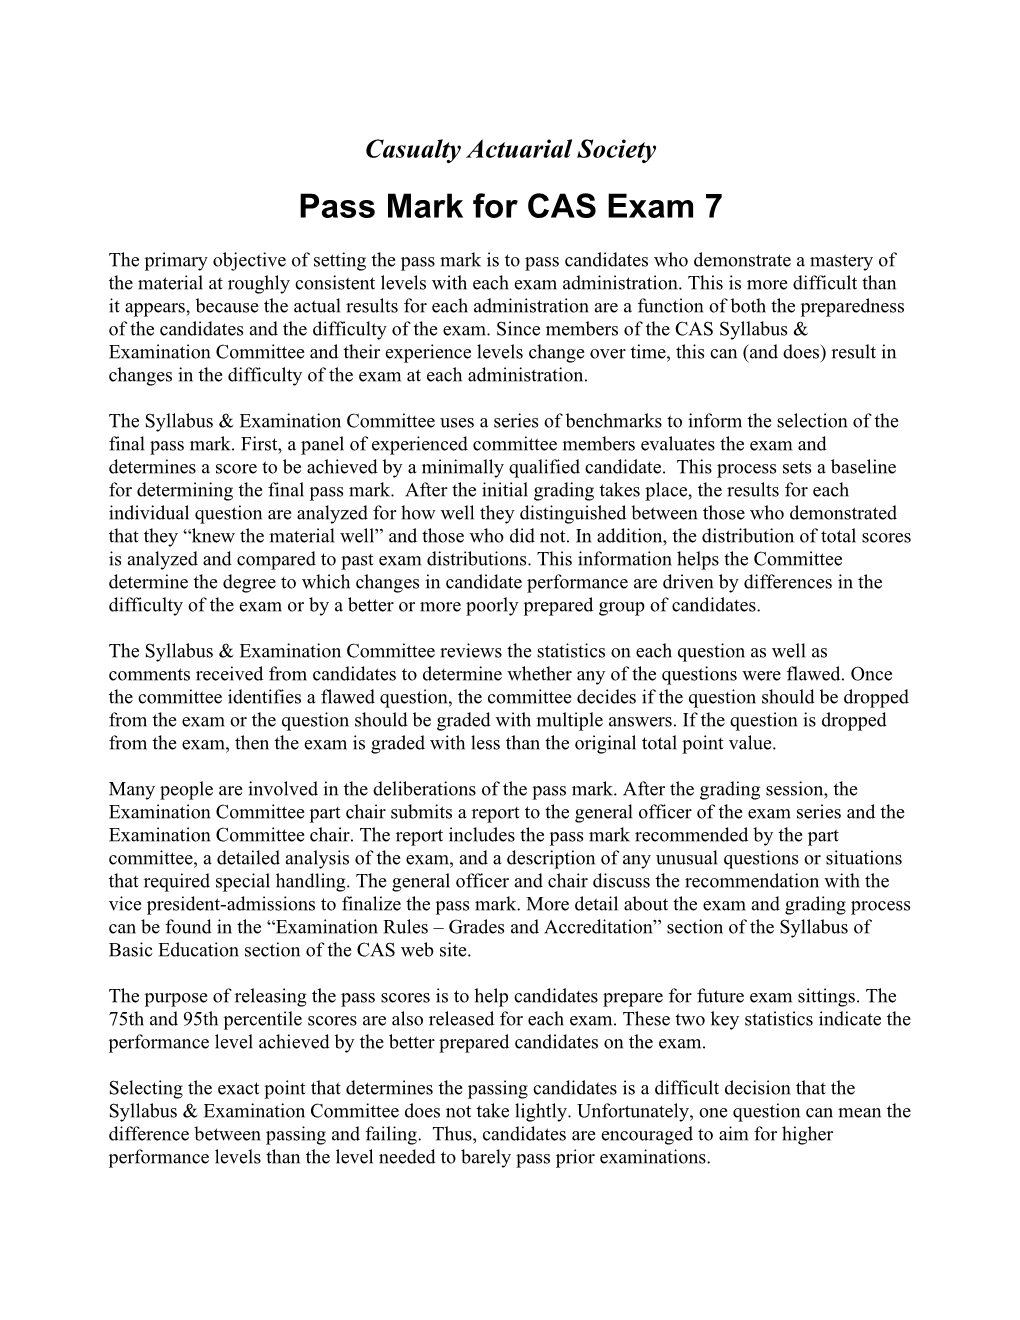 Exam 7 Pass Marks